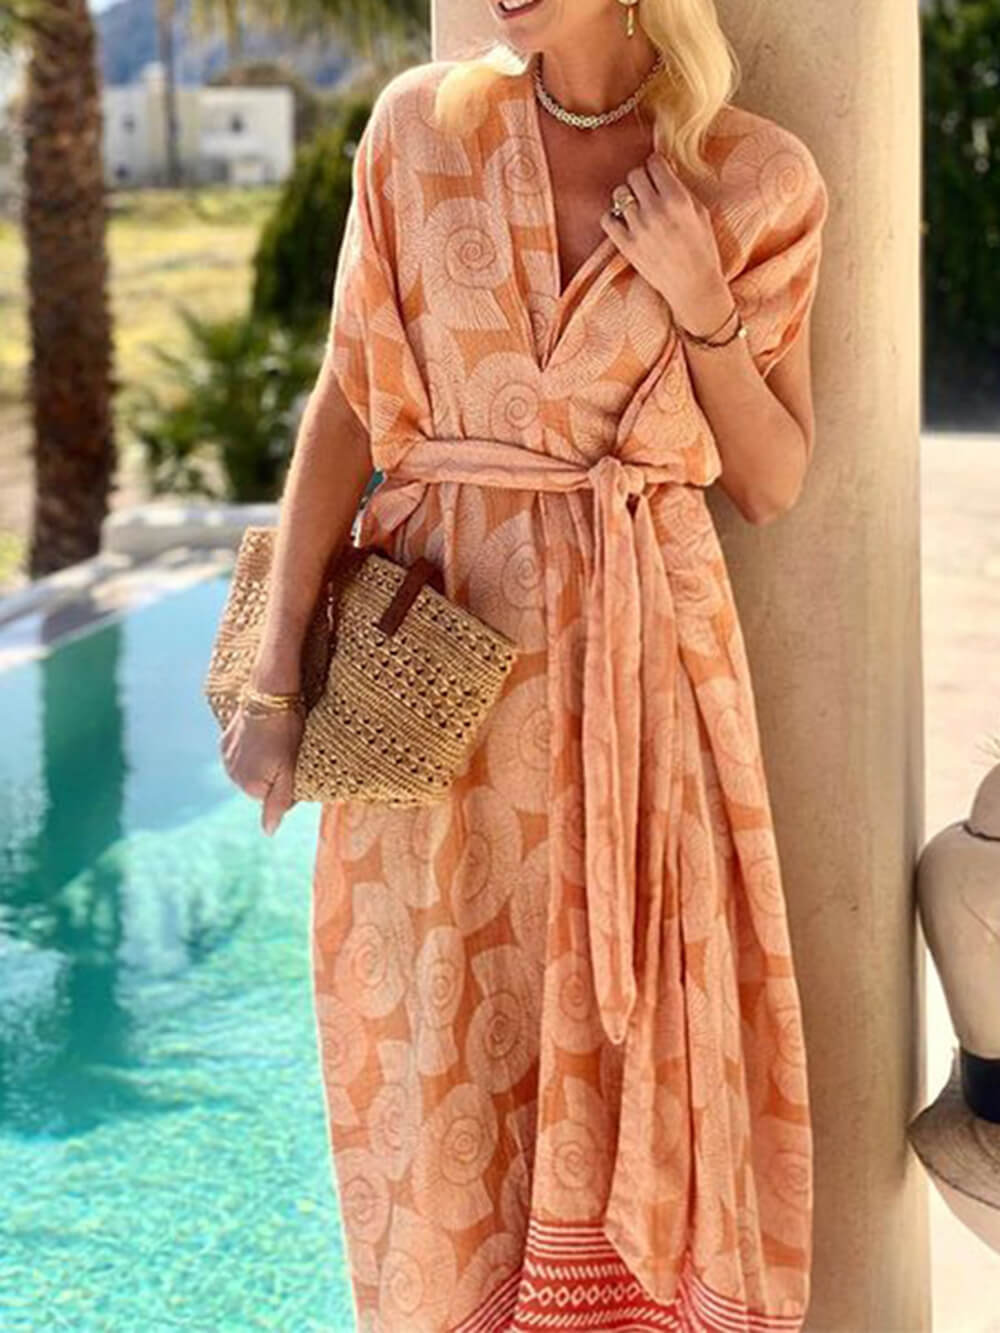 Modna, drukowana sukienka plażowa o średniej długości, bez rękawów, z dekoltem w kształcie litery V